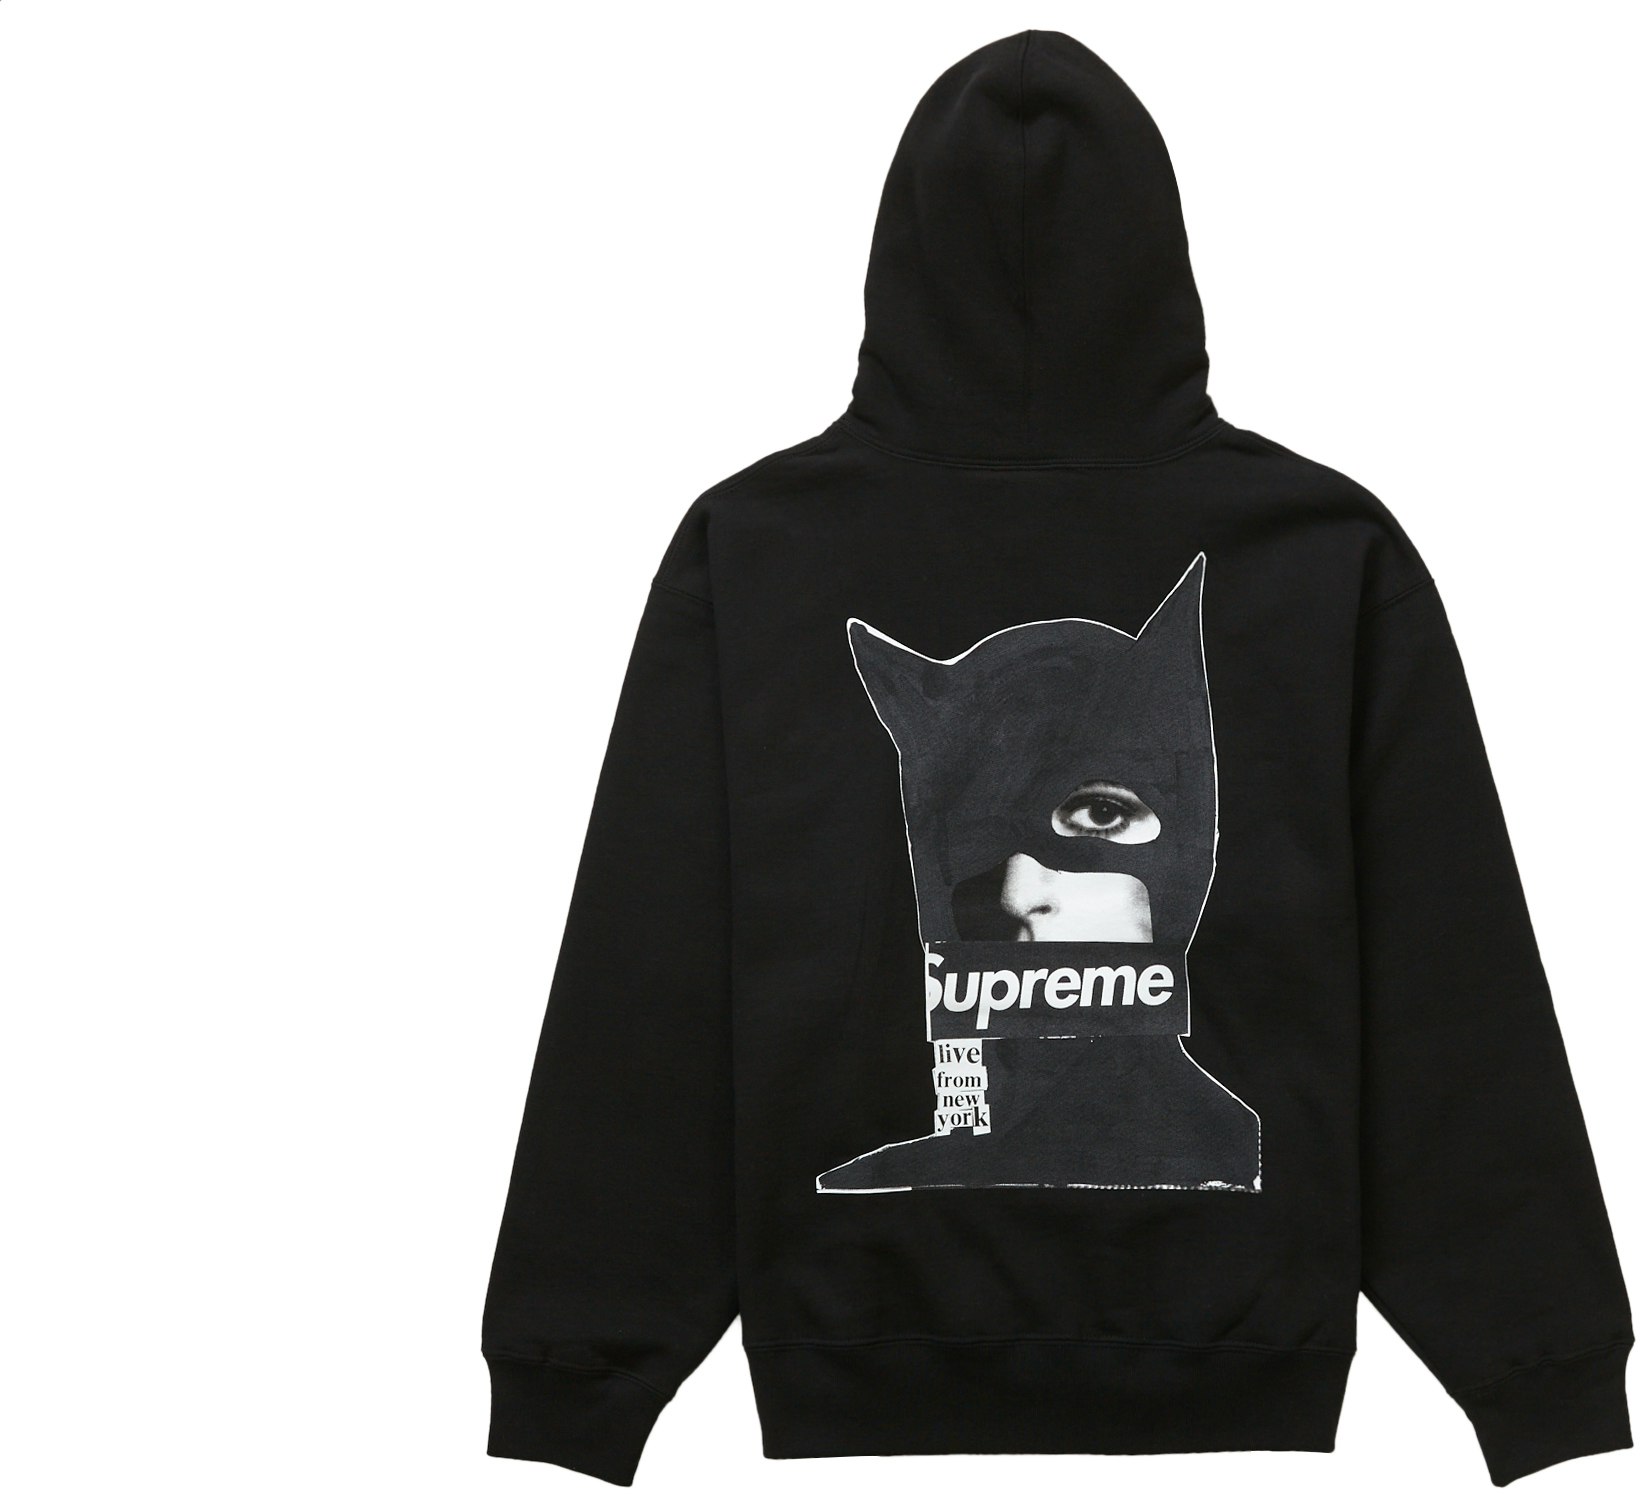 Supreme Catwoman Hooded Sweatshirt Black - Novelship